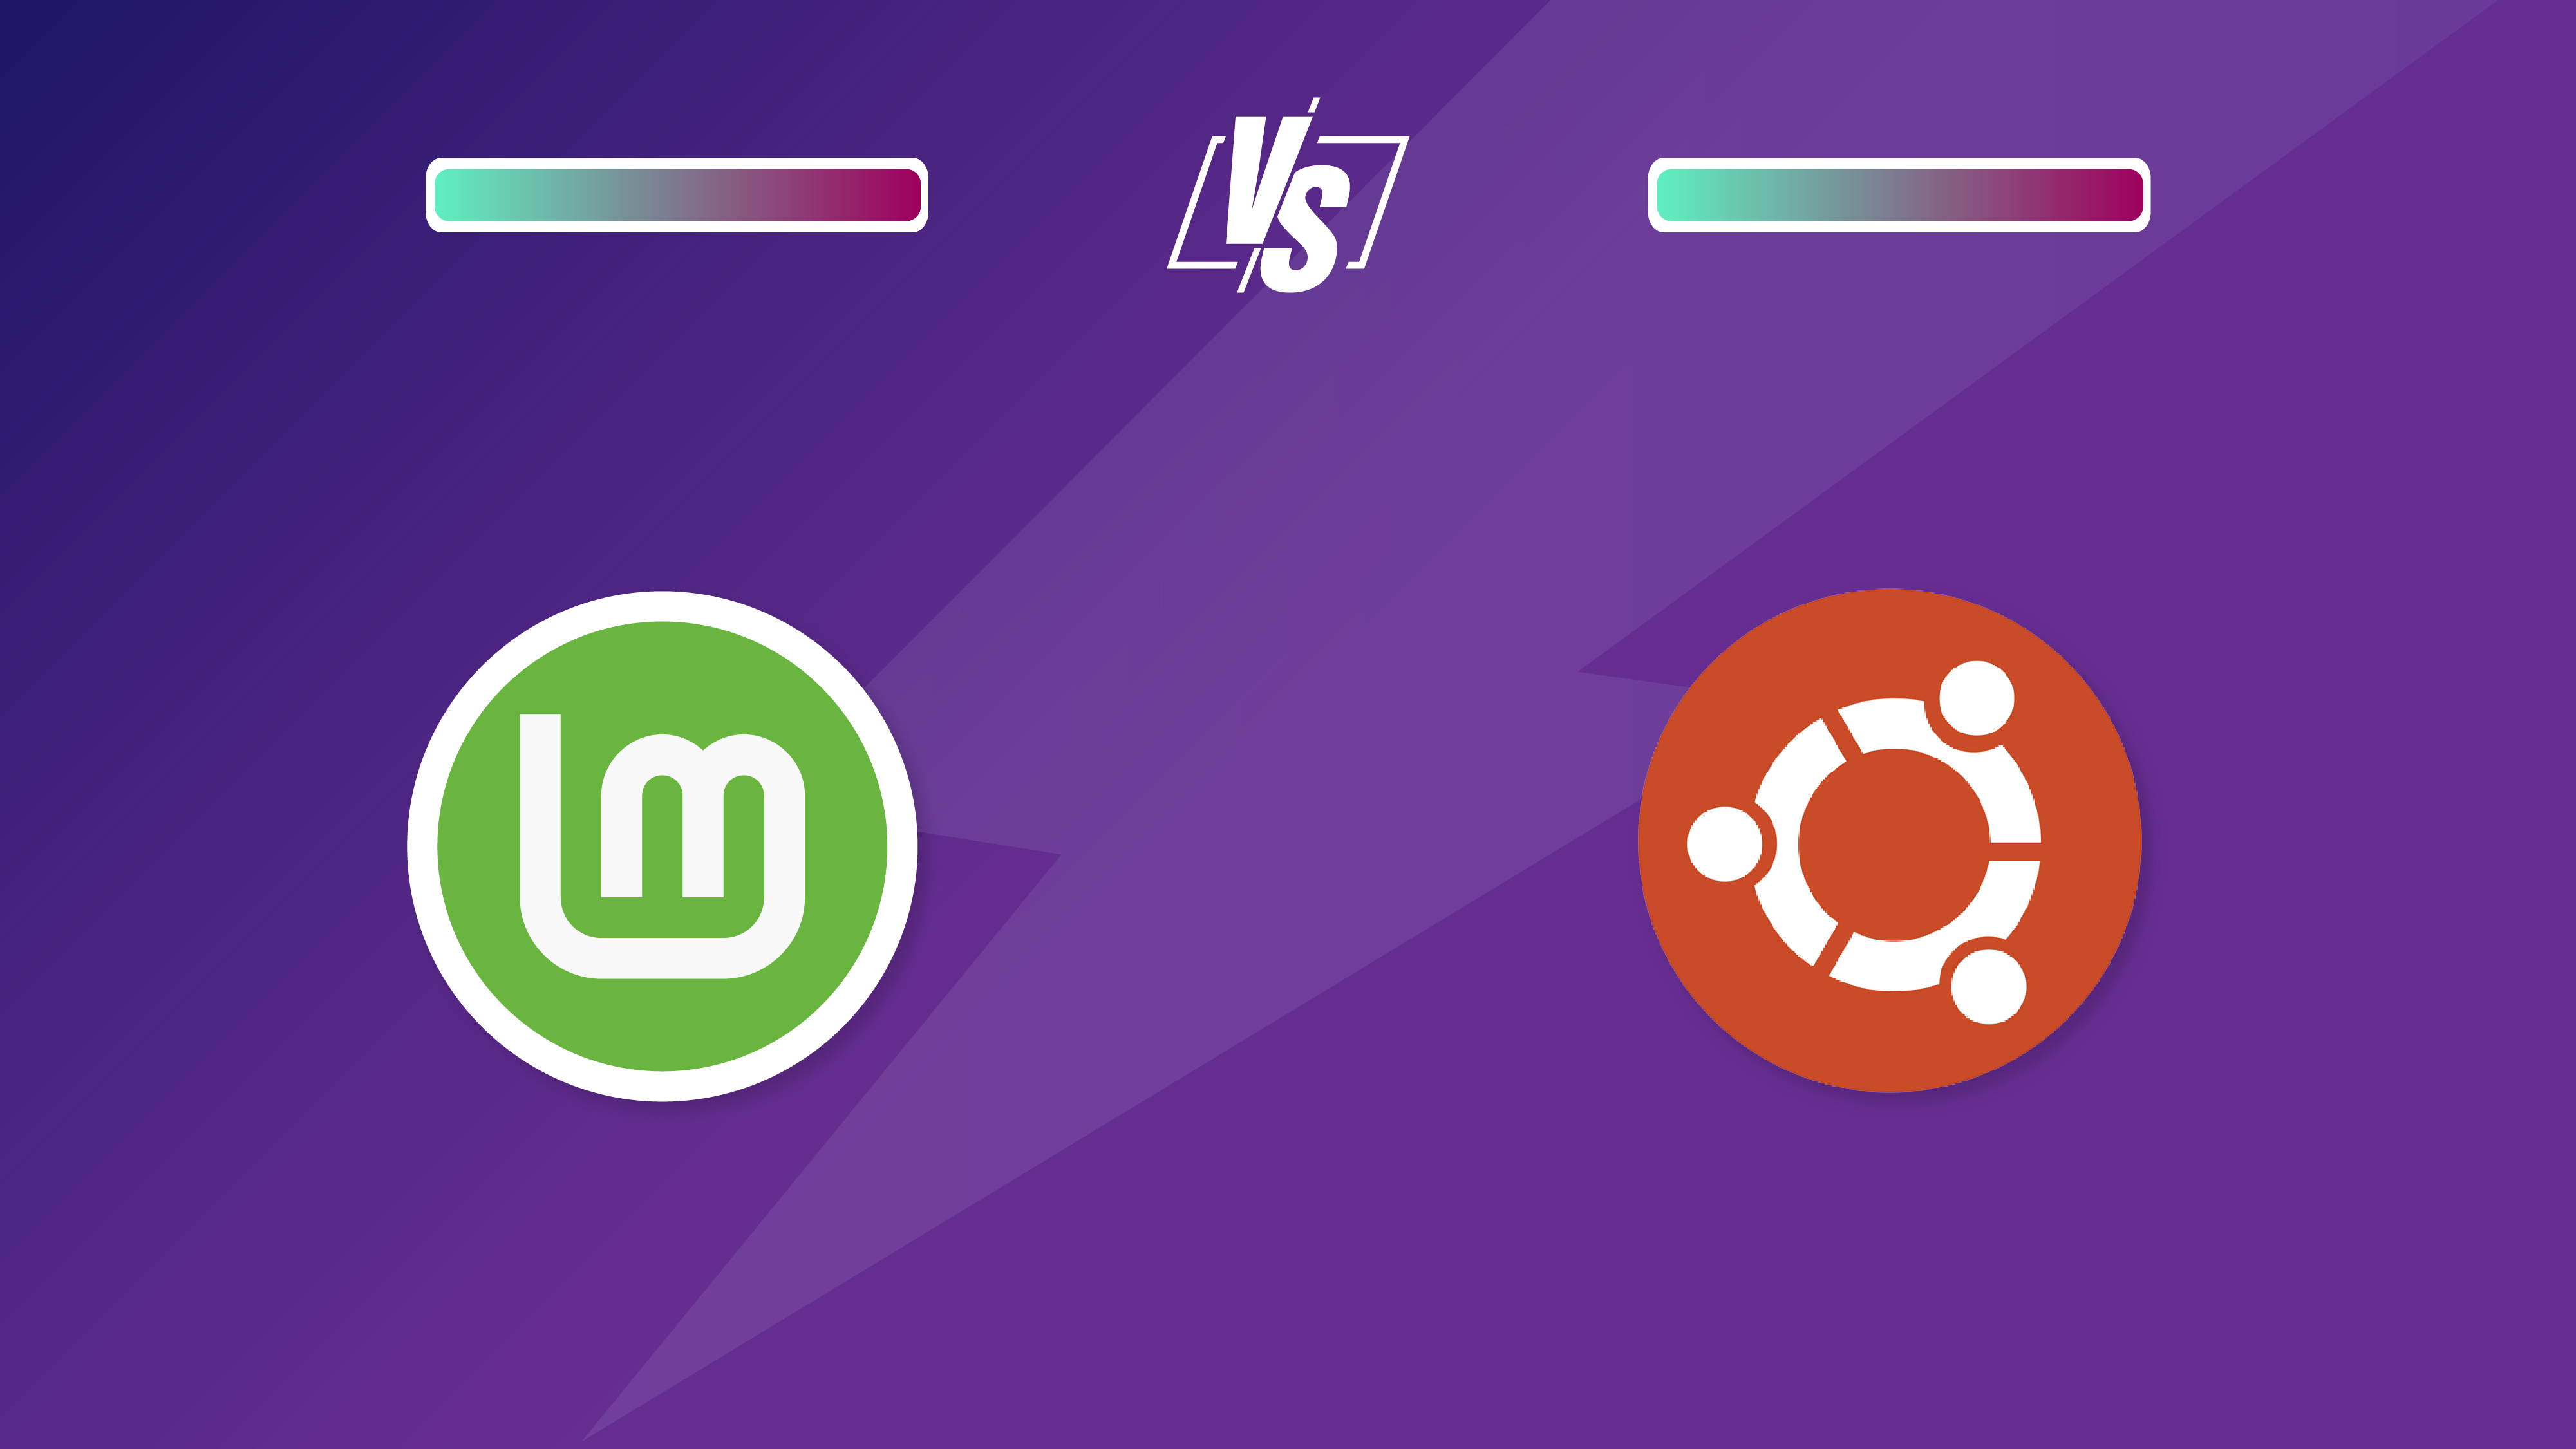 Linux Mint vs Ubuntu